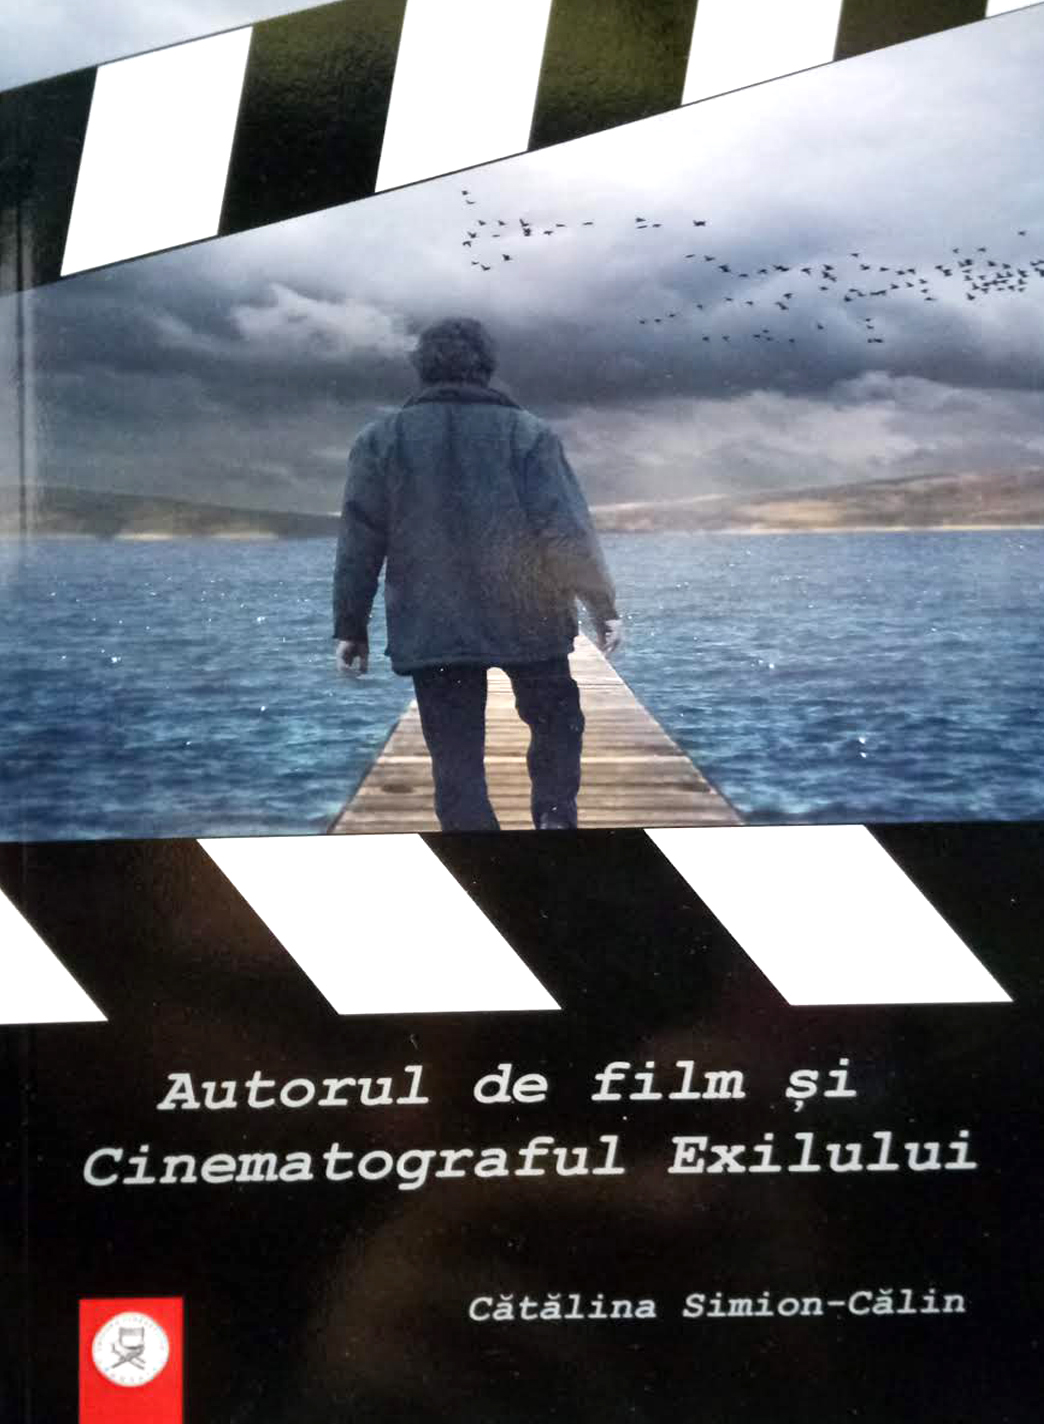 Autorul de film si Cinematograful Exilului | Catalina Simion Calin Arhitectura imagine 2022